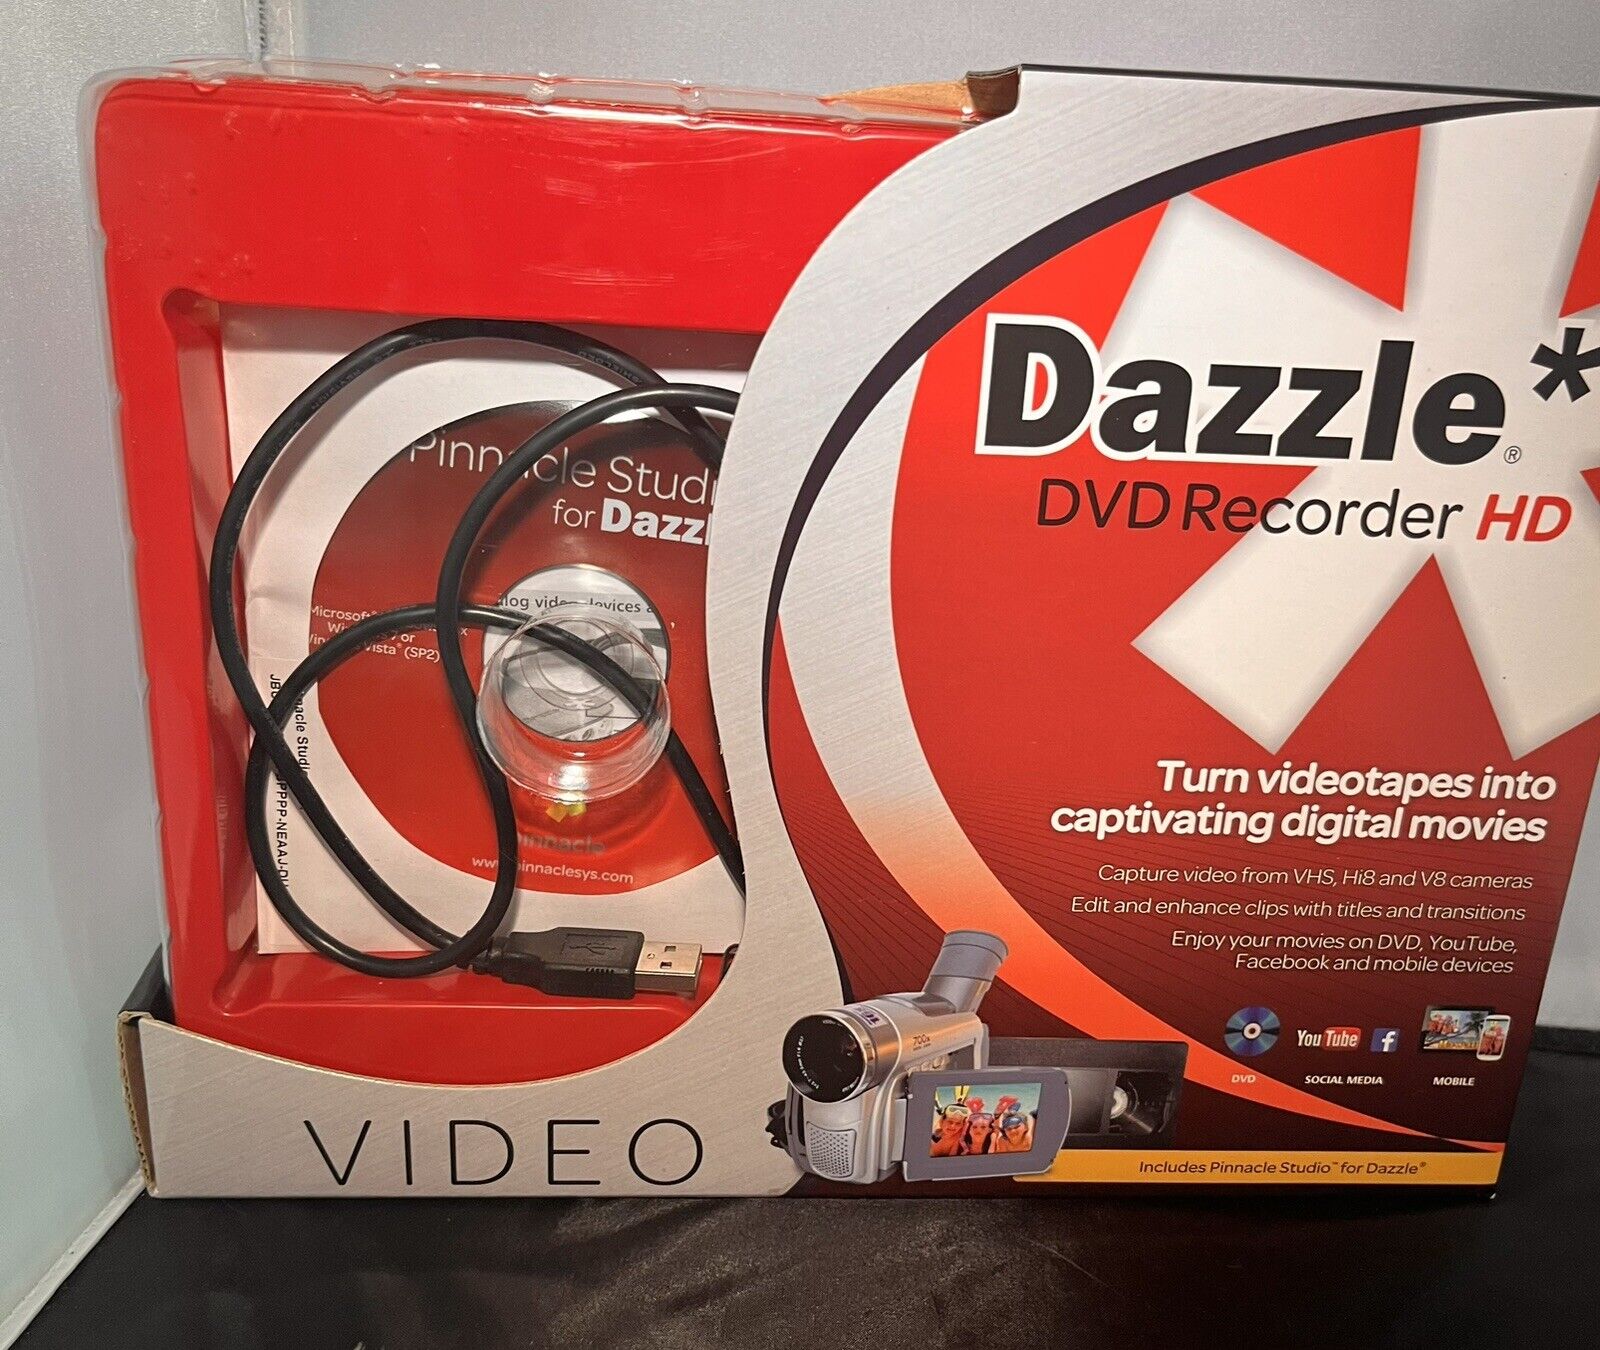 Dazzle DVD Recorder HD - Pinnacle Studio for Dazzle. W/Original box